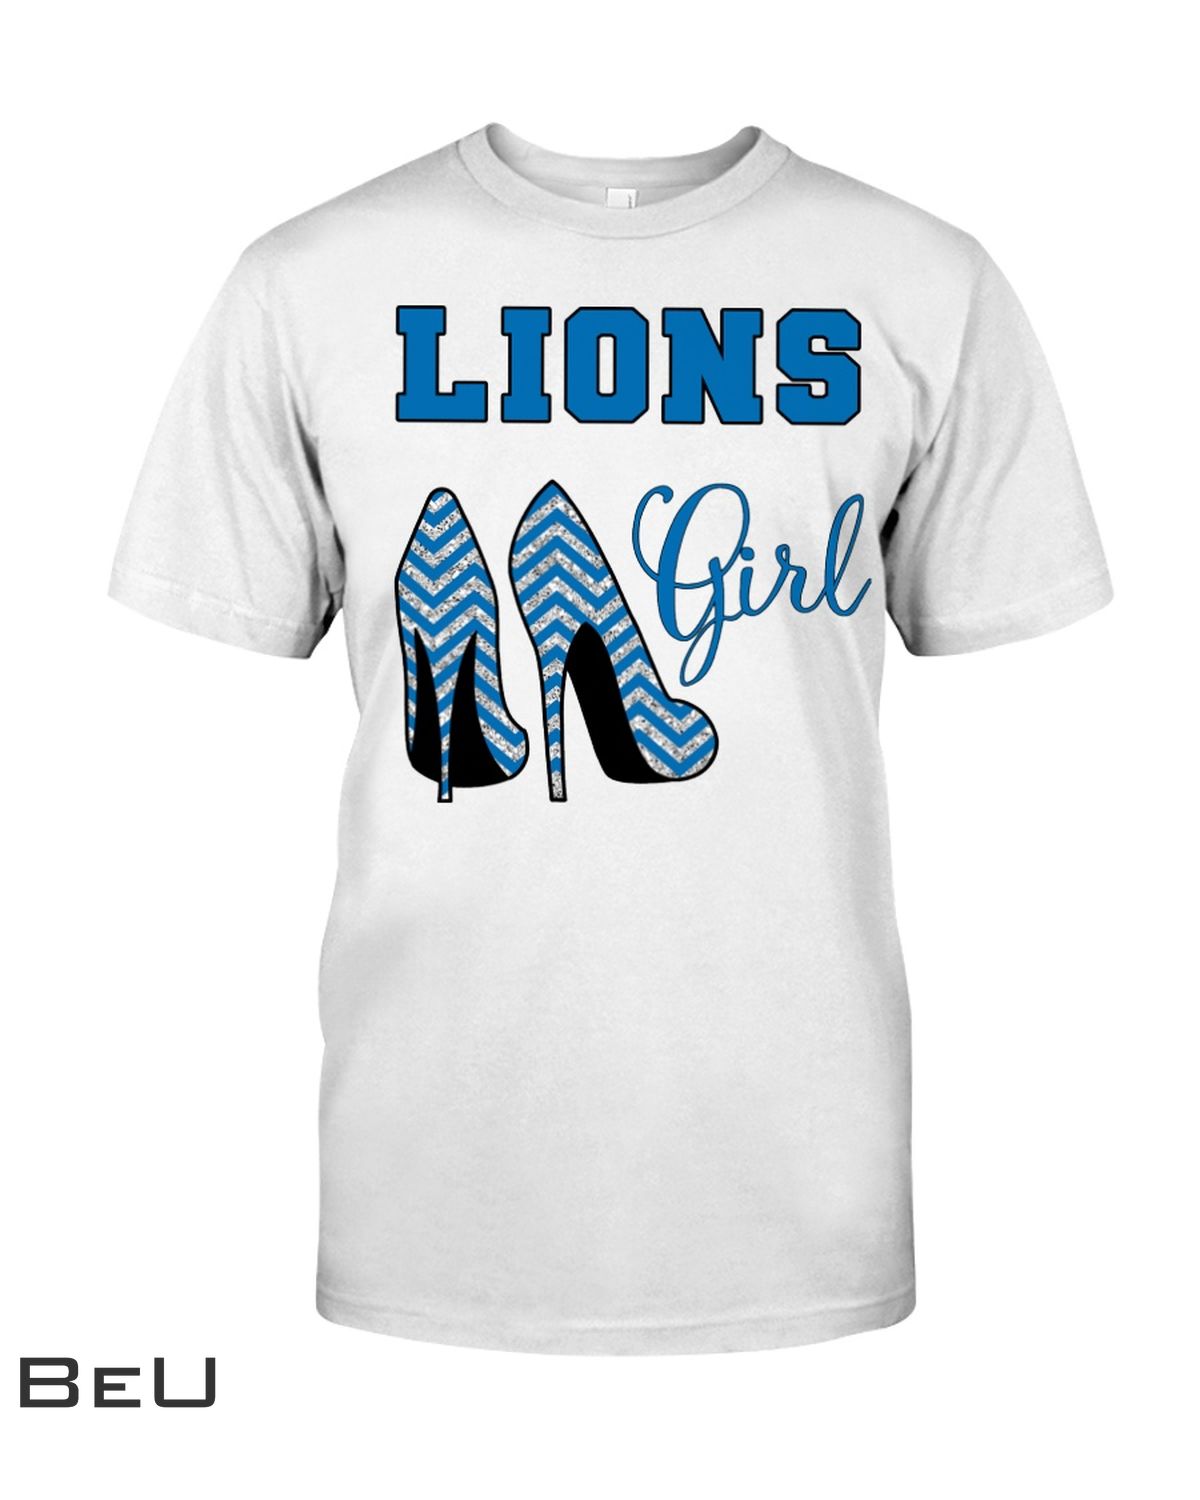 Lions Girl High Heels Shirt